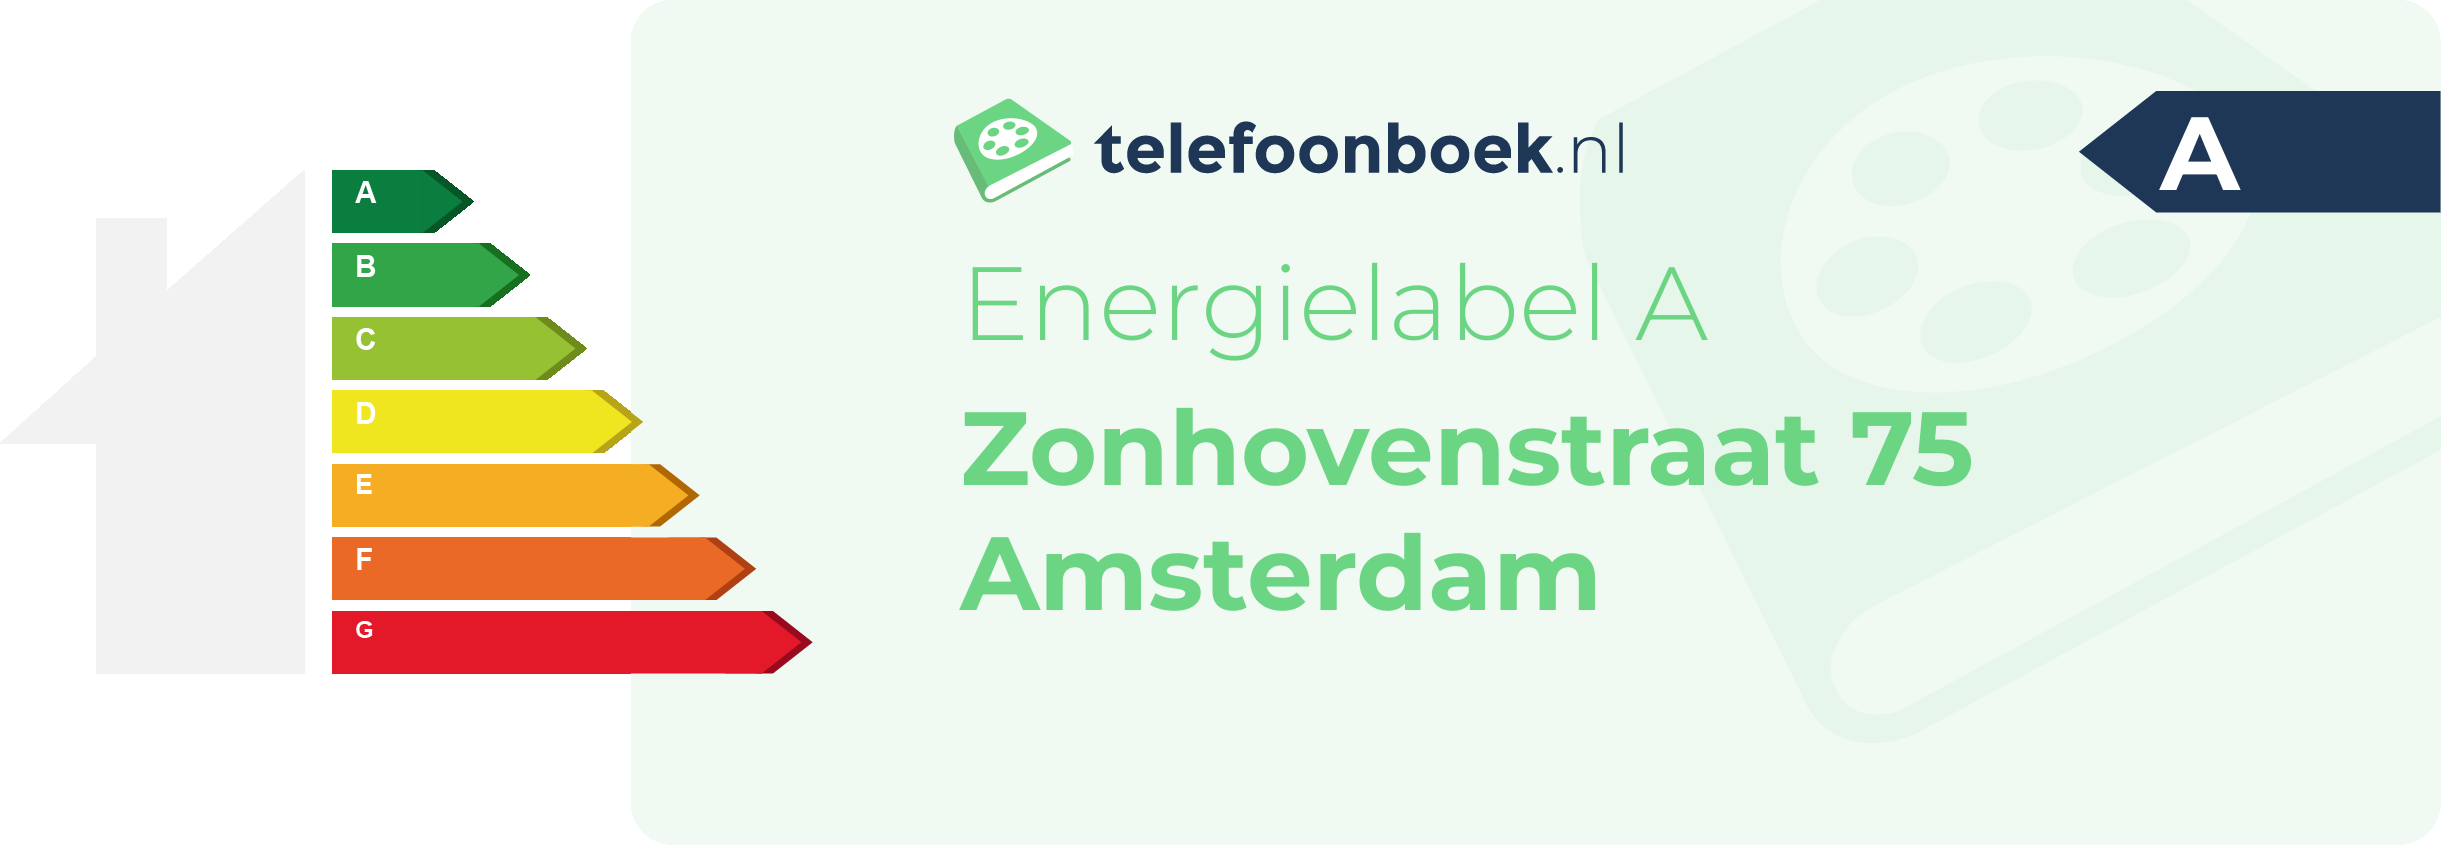 Energielabel Zonhovenstraat 75 Amsterdam